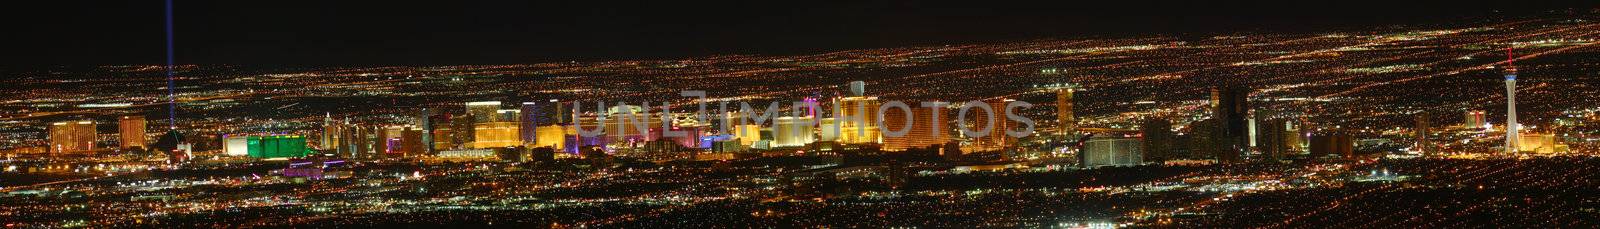 Las Vegas Strip Panoramic by Wirepec